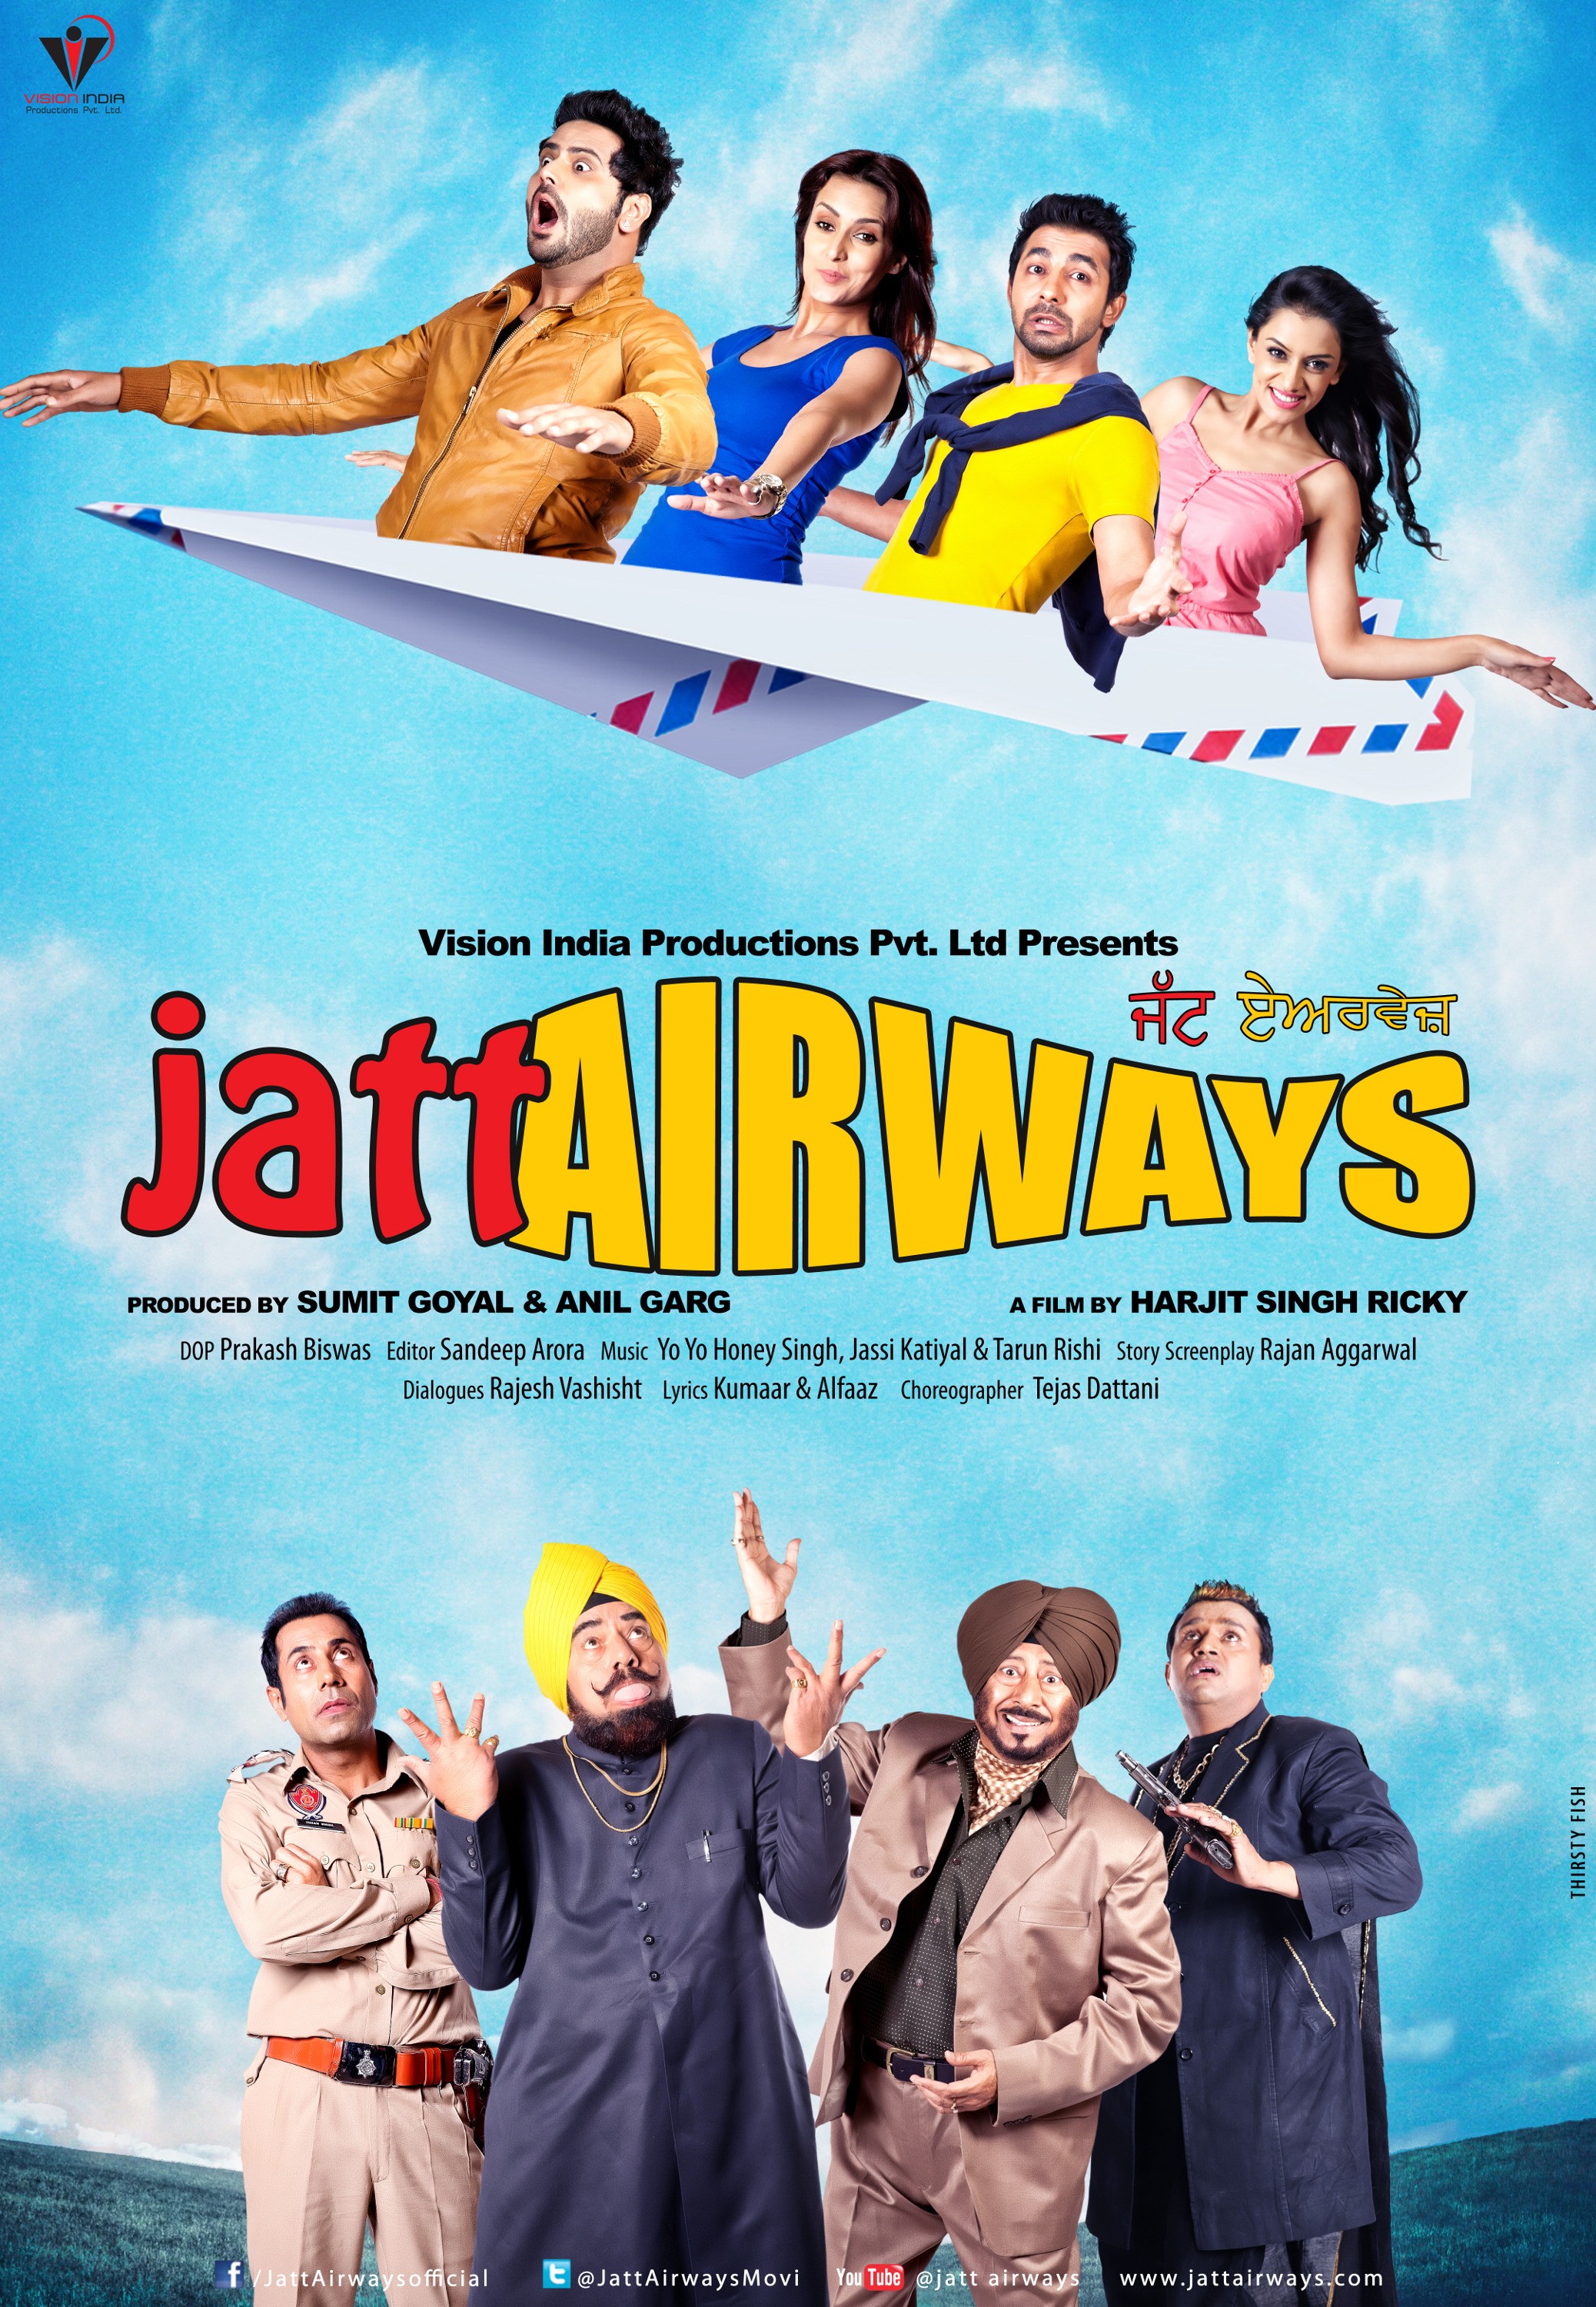 Mega Sized Movie Poster Image for Jatt Airways (#4 of 8)